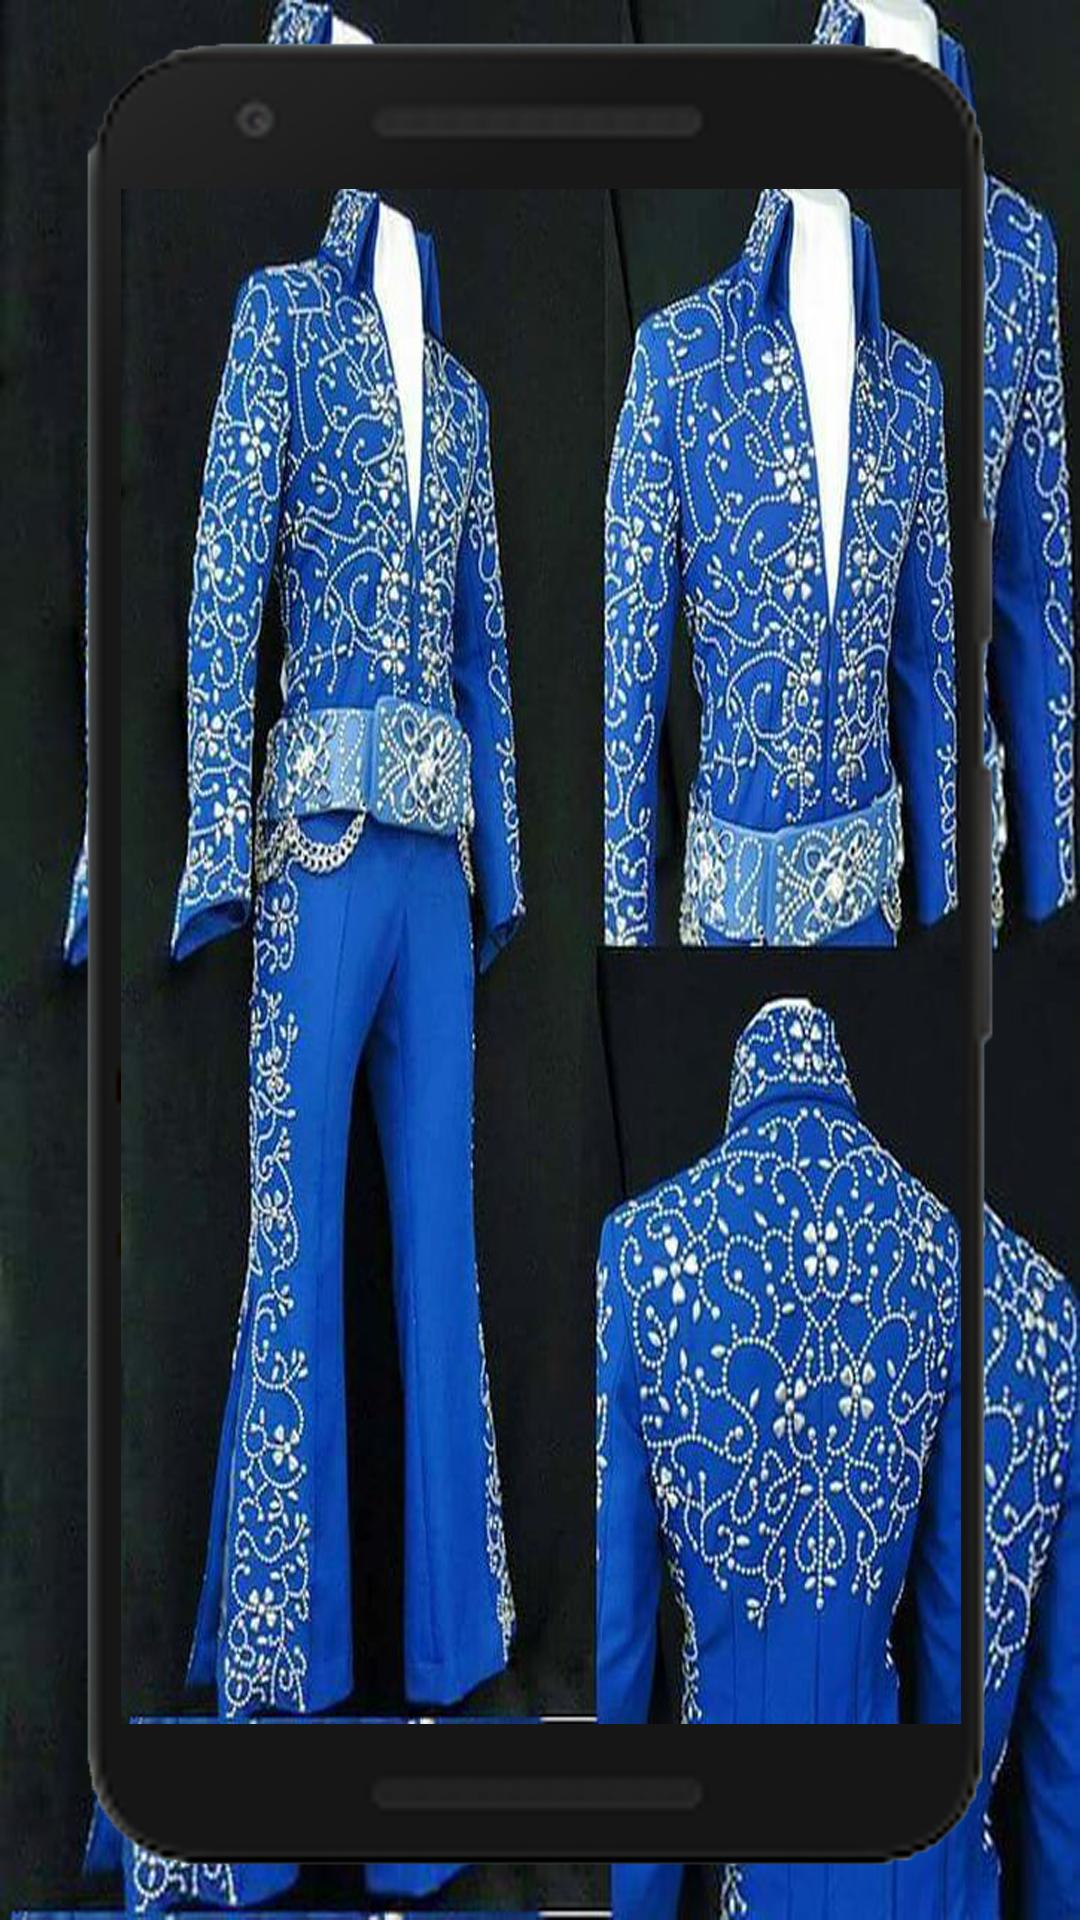 elvis blue suit wallpaper